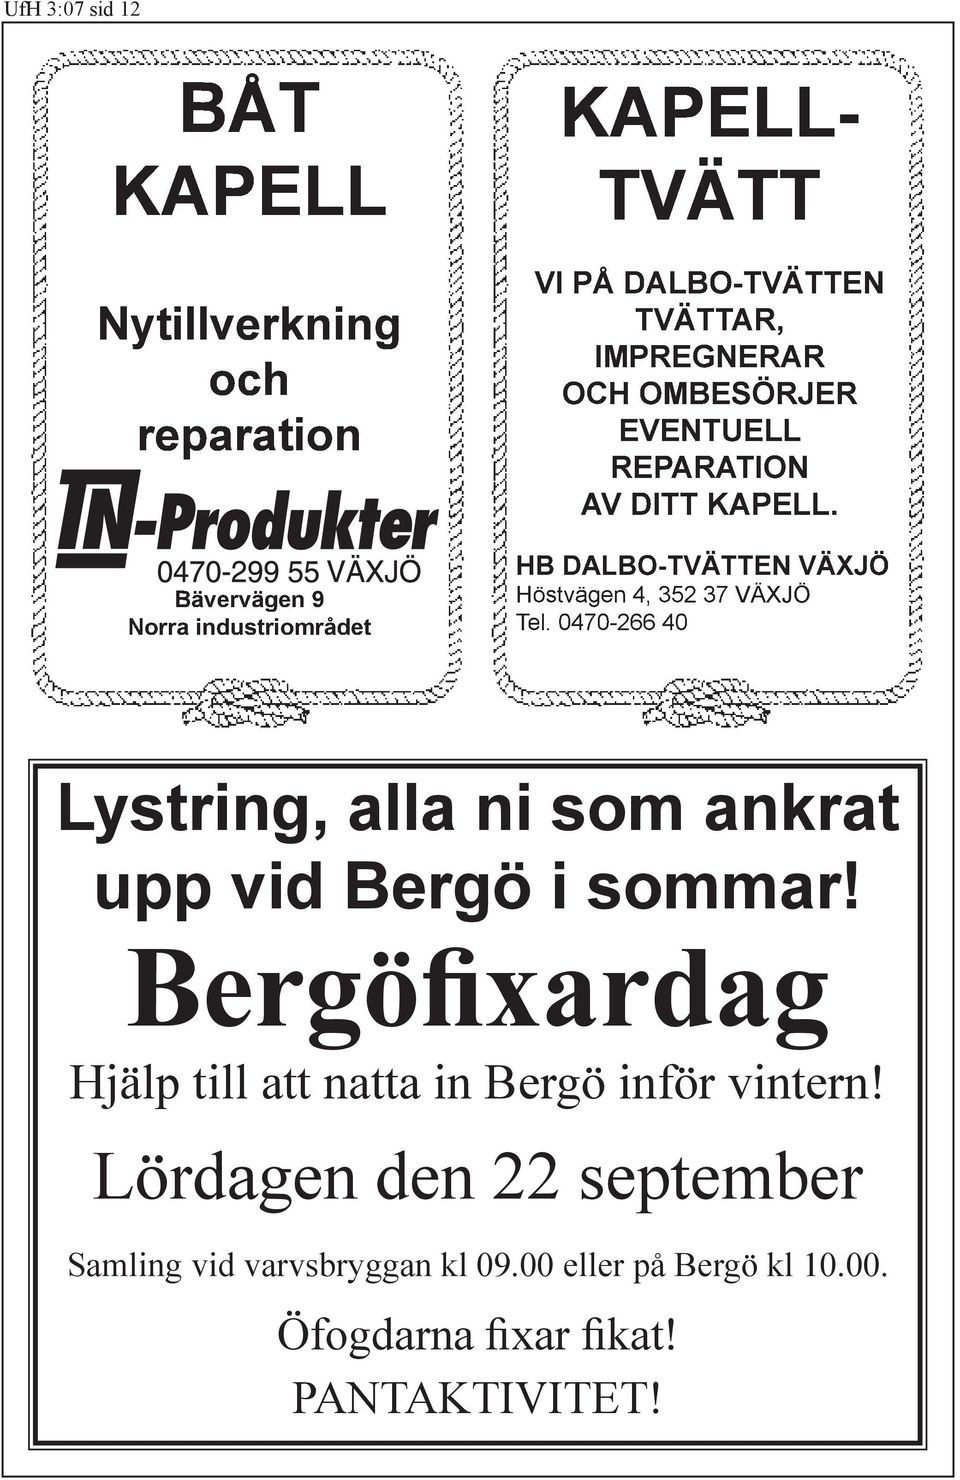 HB DALBO-TVÄTTEN VÄXJÖ Höstvägen 4, 352 37 VÄXJÖ Tel. 0470-266 40 Lystring, alla ni som ankrat upp vid Bergö i sommar!